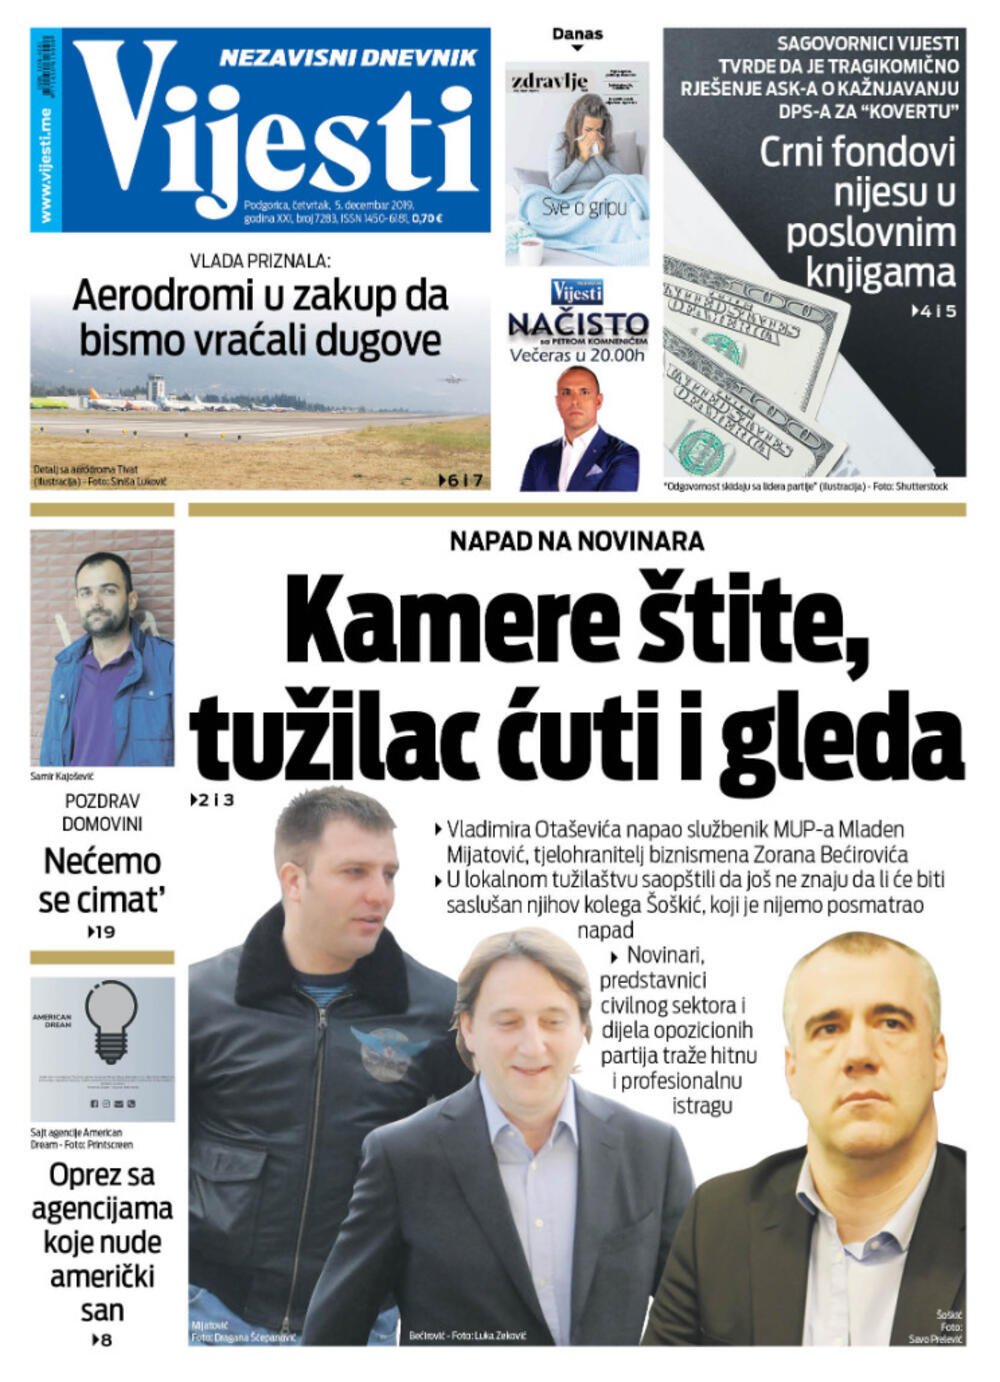 Naslovna strana "Vijesti" za 5. decembar 2019. godine